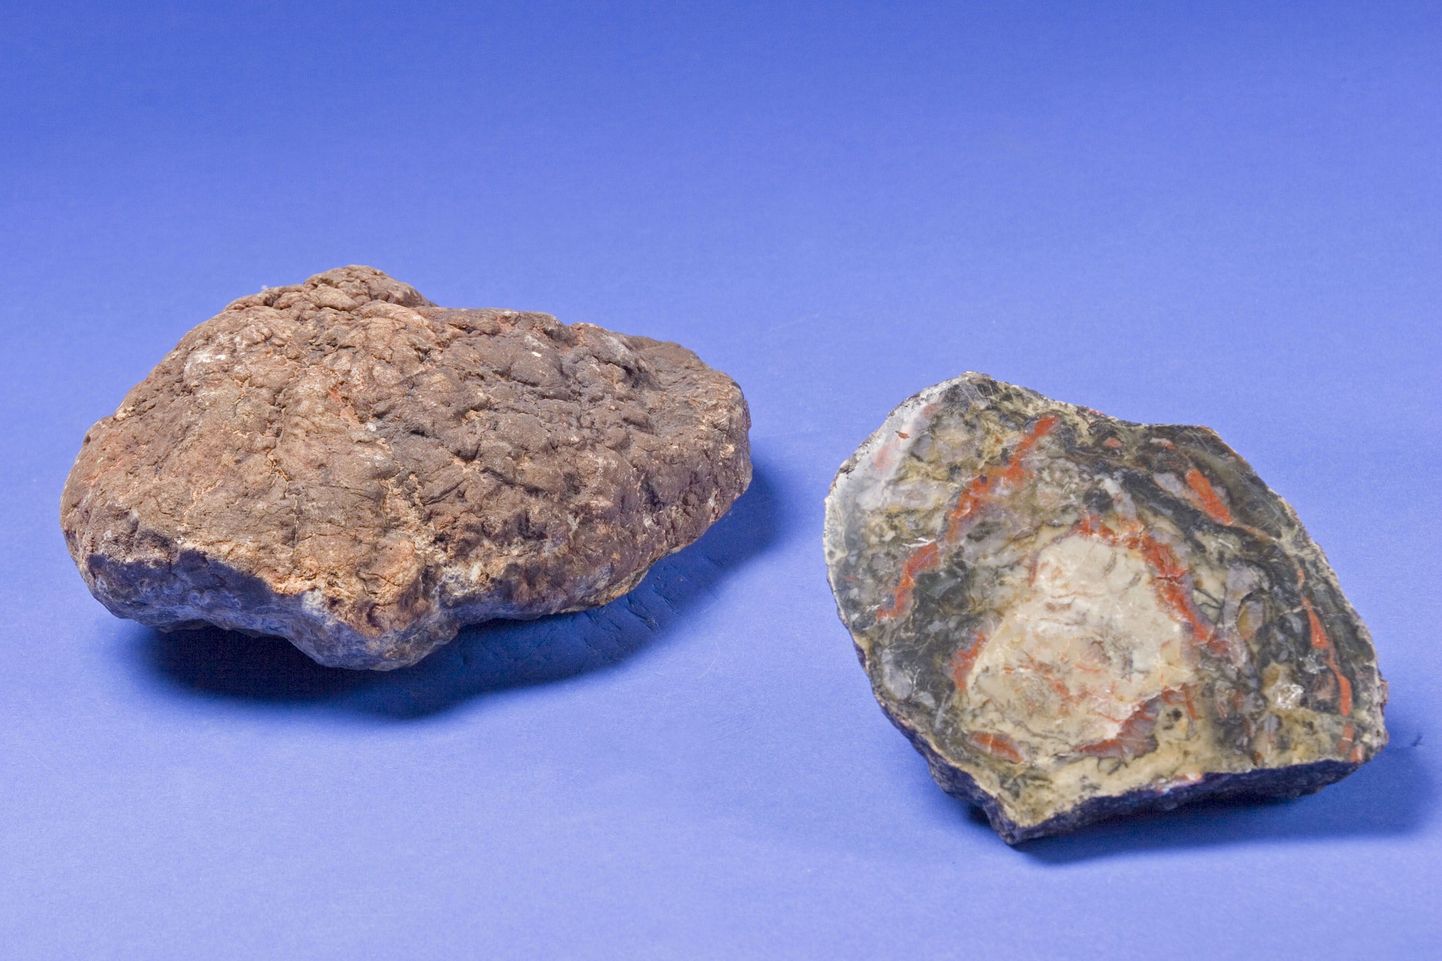 Bonhami oksjonimaja oksjonil müüdud dinosauruse fossiilne väljaheide ehk koproliit